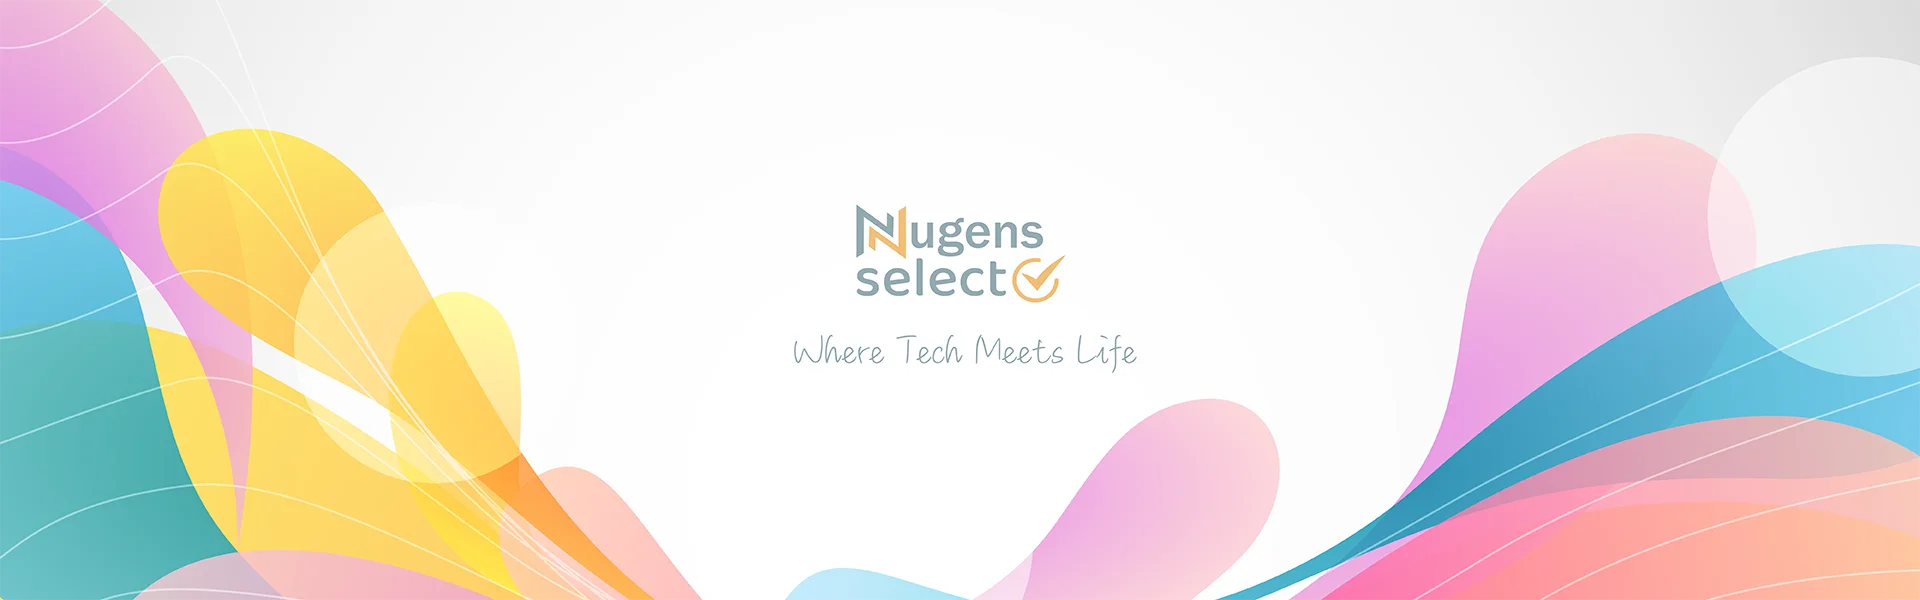 NugensSelect Banner-電腦版